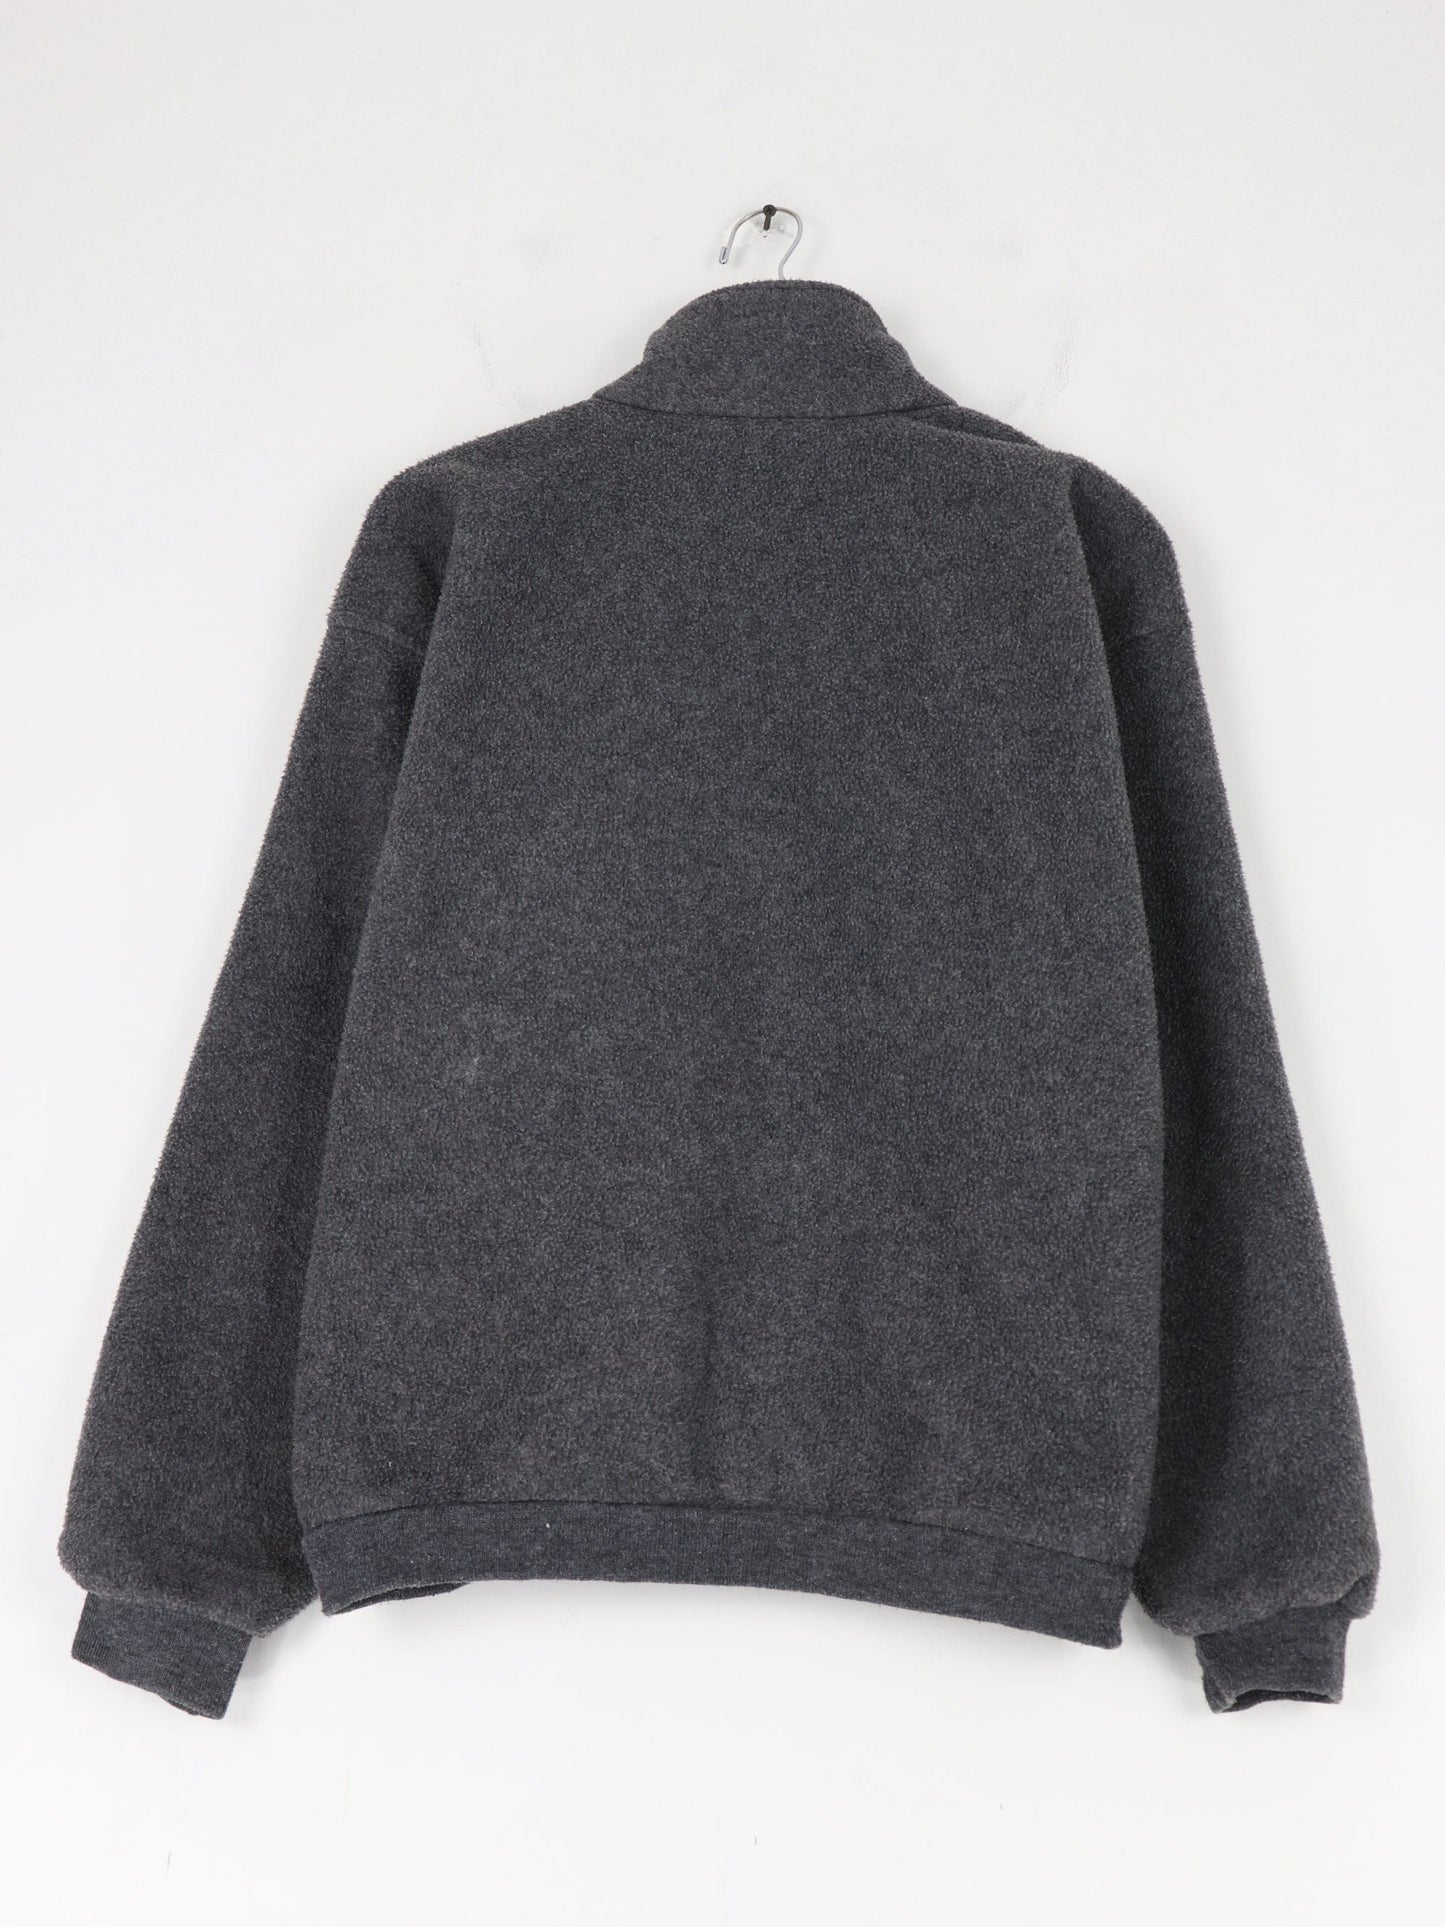 Other Sweatshirts & Hoodies Vintage Lands End Sweater Womens Medium Grey Fleece Sweater Zip Outdoors